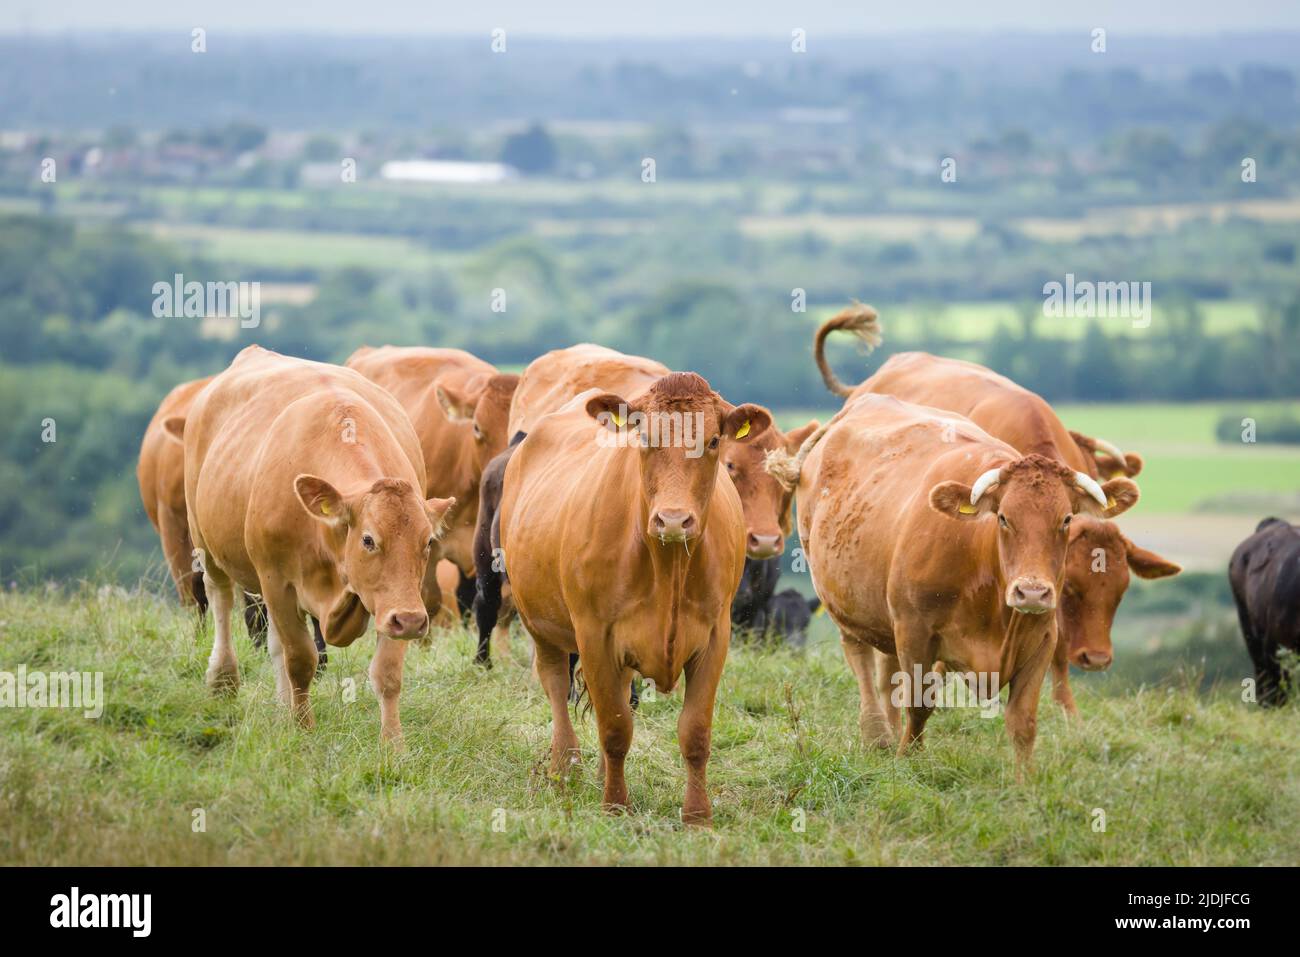 Mandria di bovini Hereford con vitelli. Bestiame in un campo su una fattoria. Aylesbury vale, Buckinghamshire, Regno Unito Foto Stock